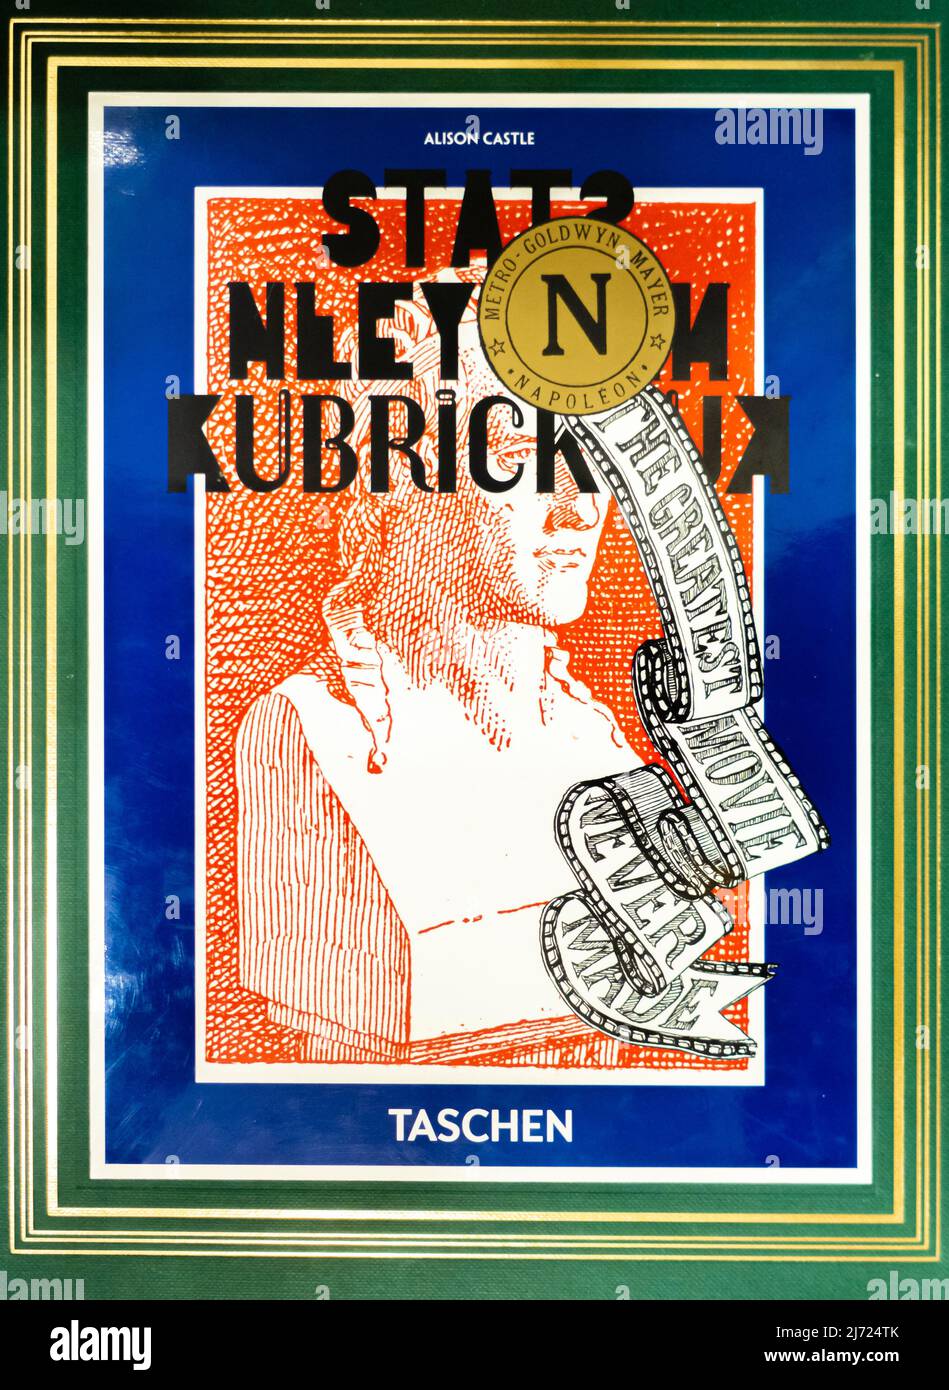 « Napoléon » de Stanley Kubrick. The Greatest Movie Never Made - Taschen Edition - 2009 - par Alison Castle Banque D'Images